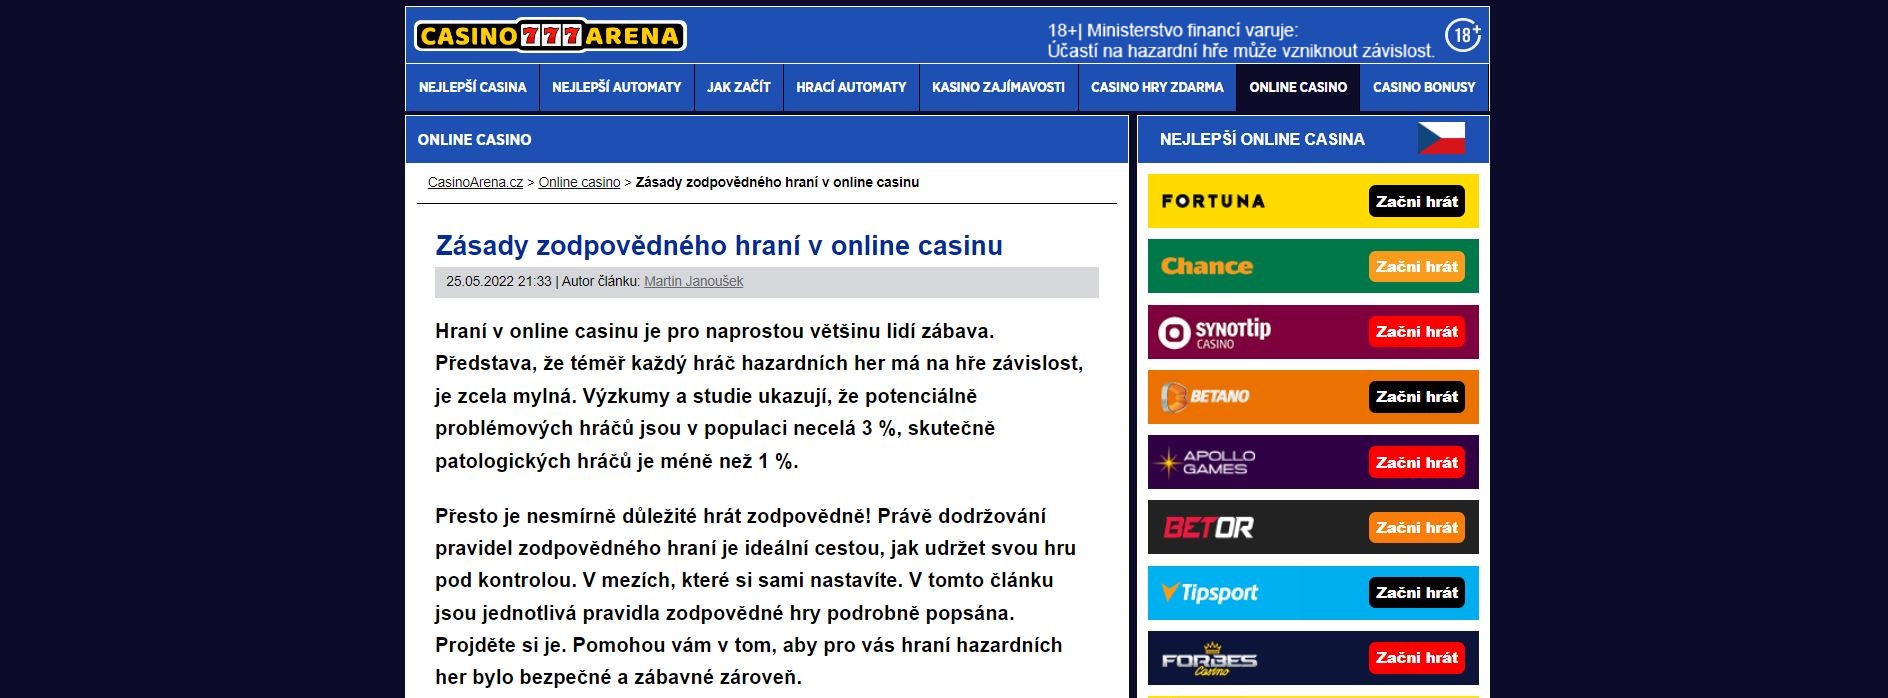 Zodpovědně v online casinu - Casino Aréna CZ